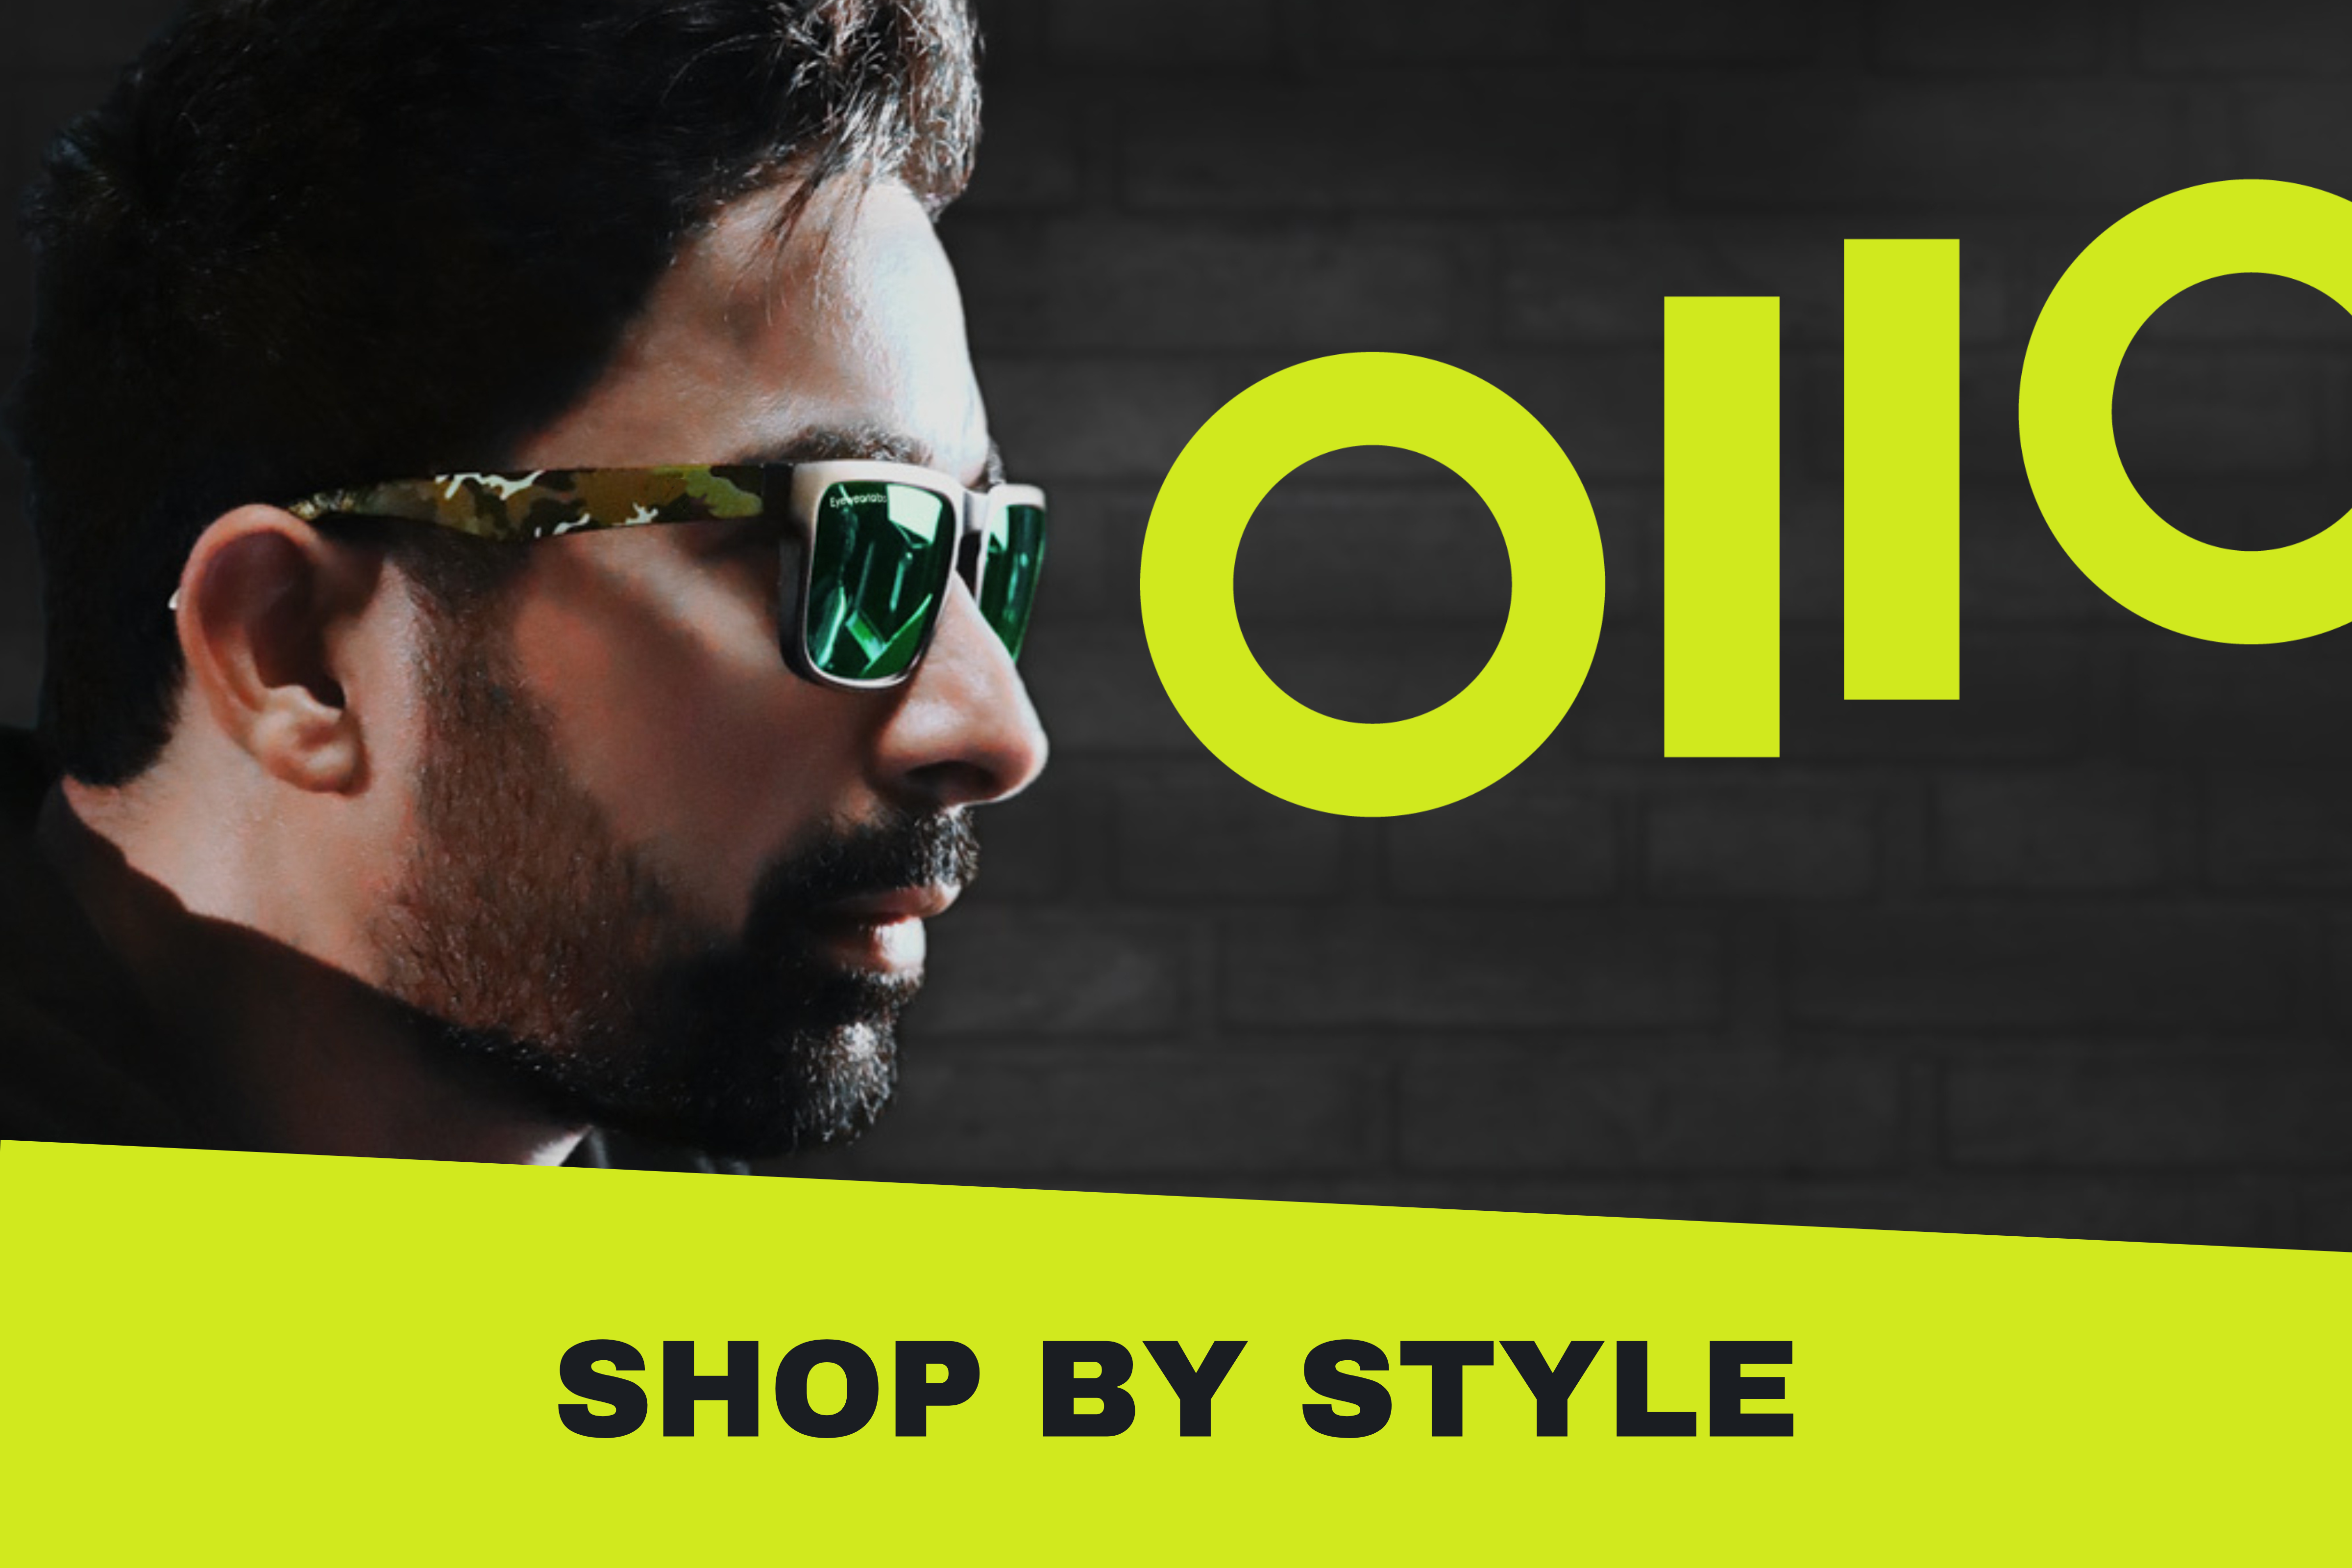 Buy Black Sunglasses for Men by Resist Eyewear Online | Ajio.com